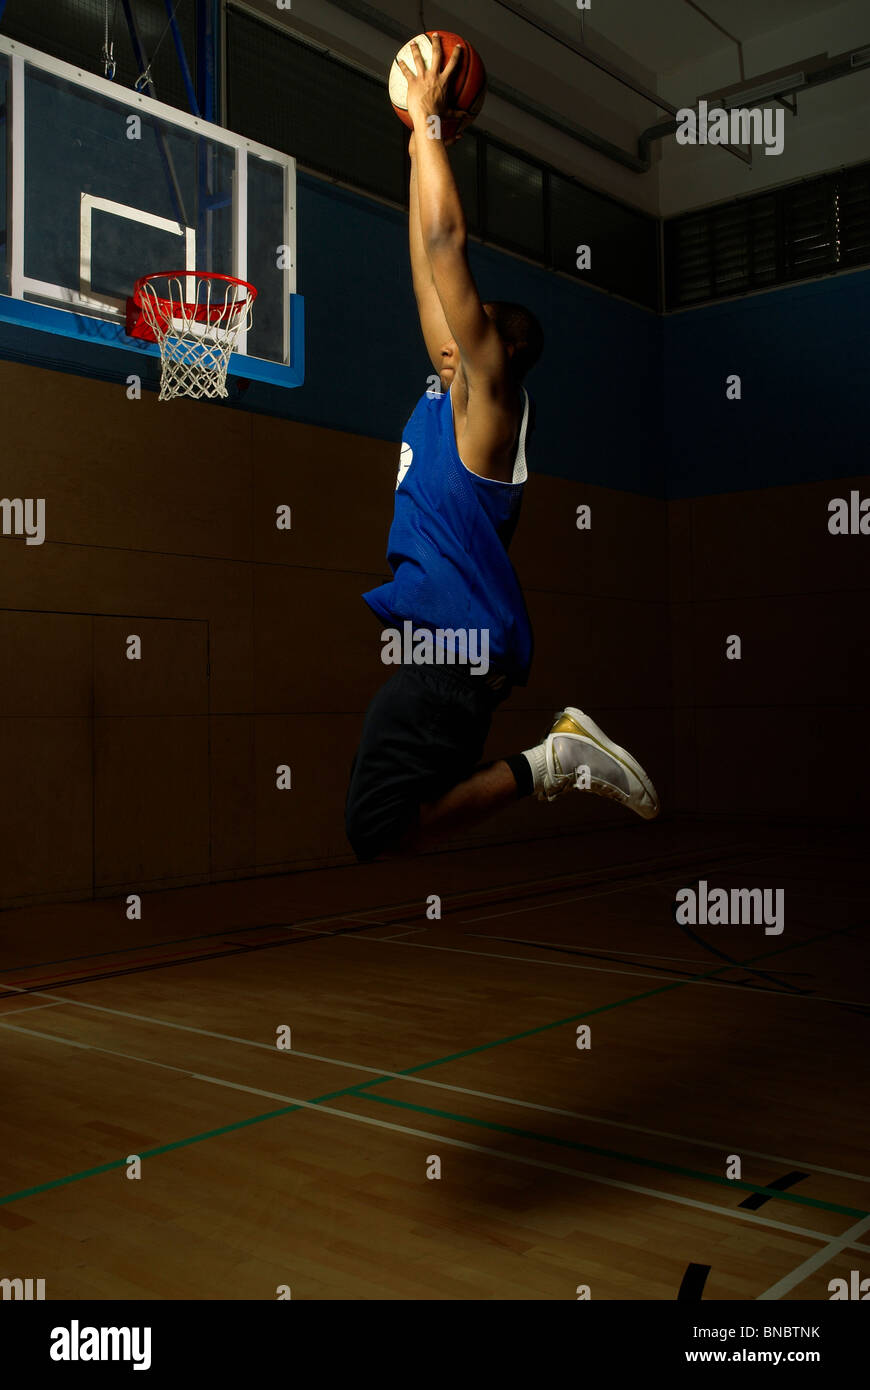 Basket-ball player jumping de hoop Banque D'Images